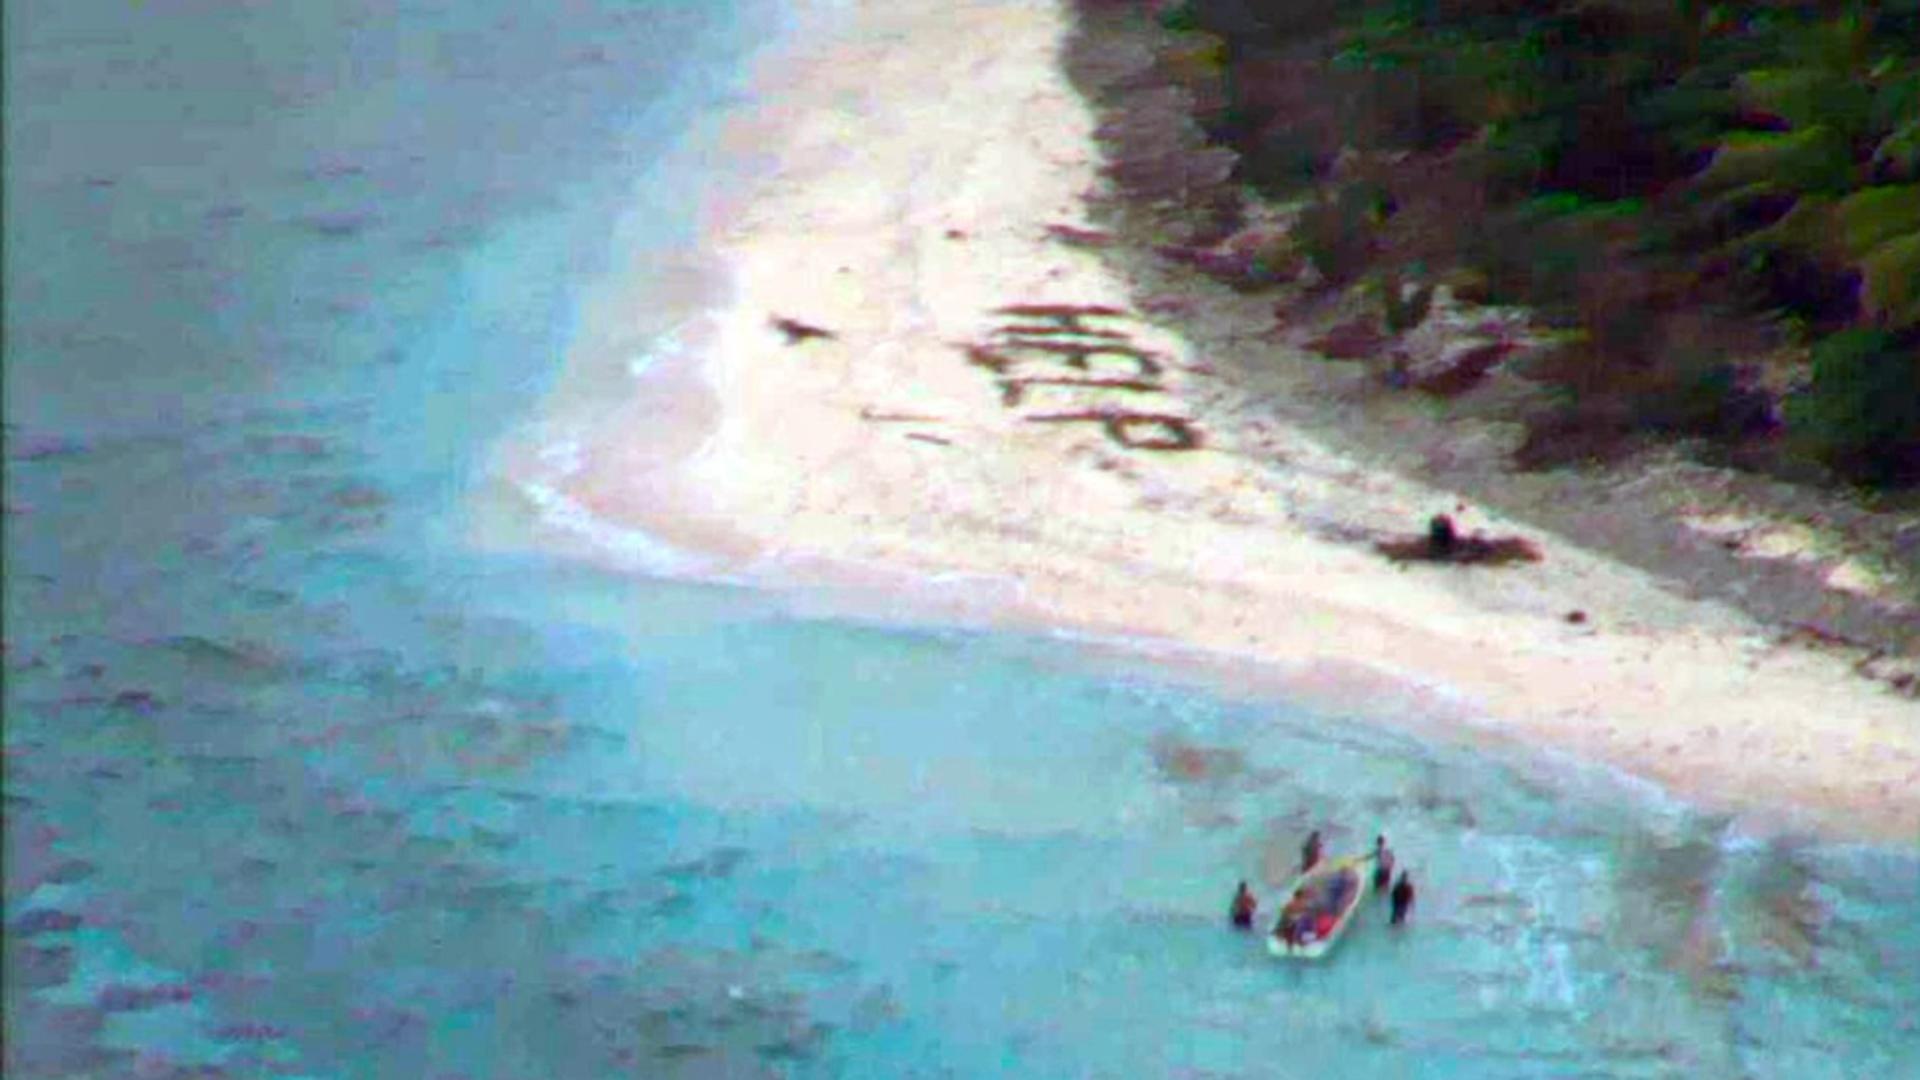 Naufragiații au scris HELP cu frunze de palmier pe plaja insulei. Foto/Profimedia